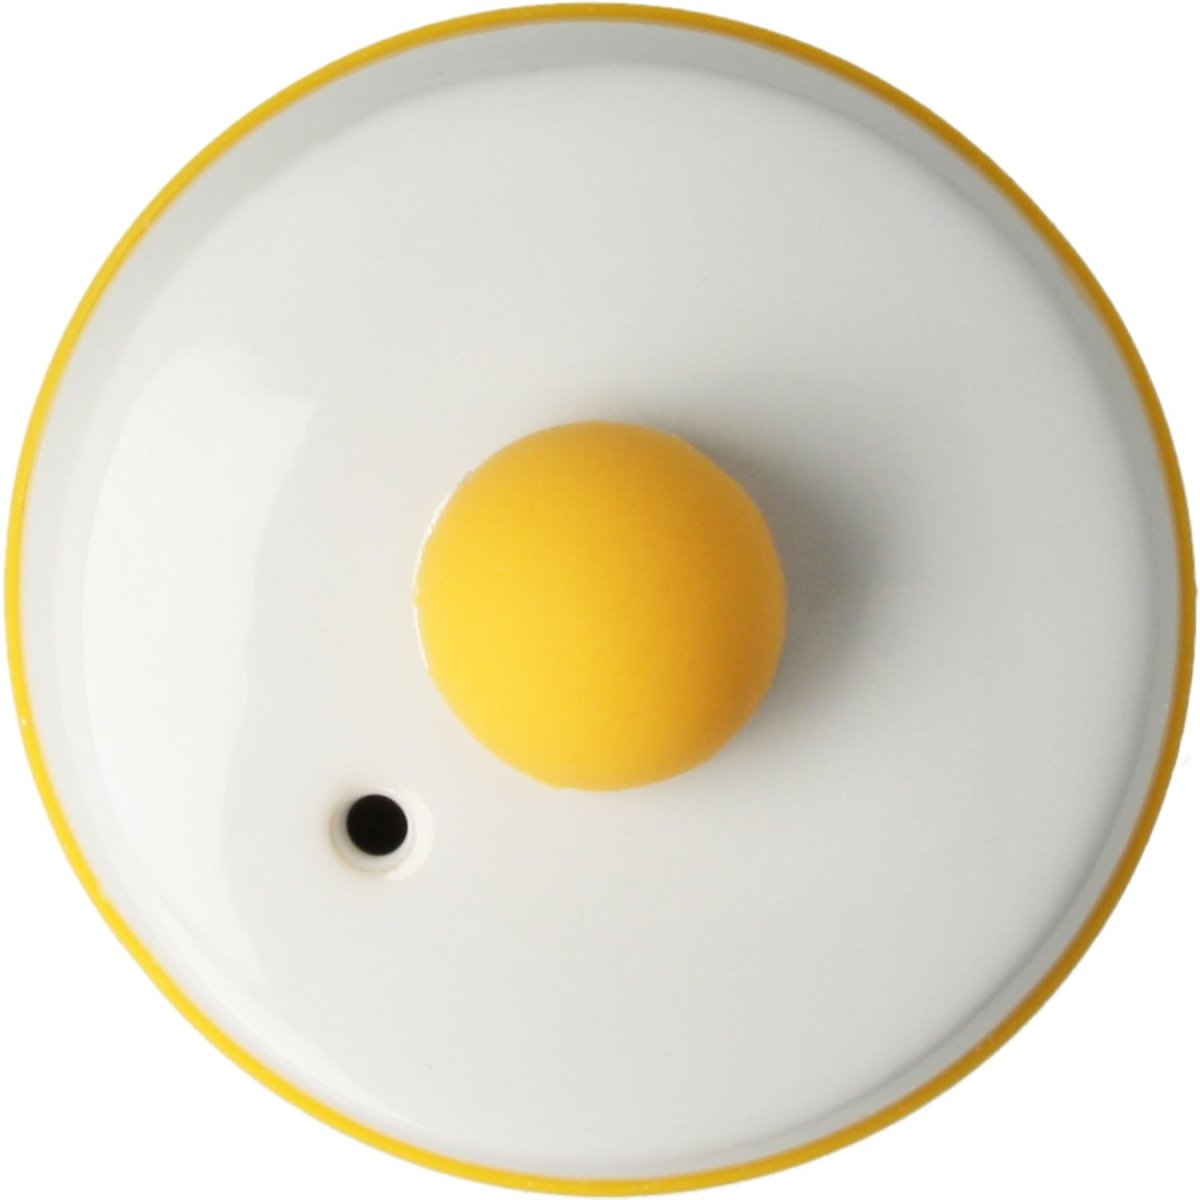 Cuece Huevos microondas cerámica - Egg Poacher - Estuche Vapor